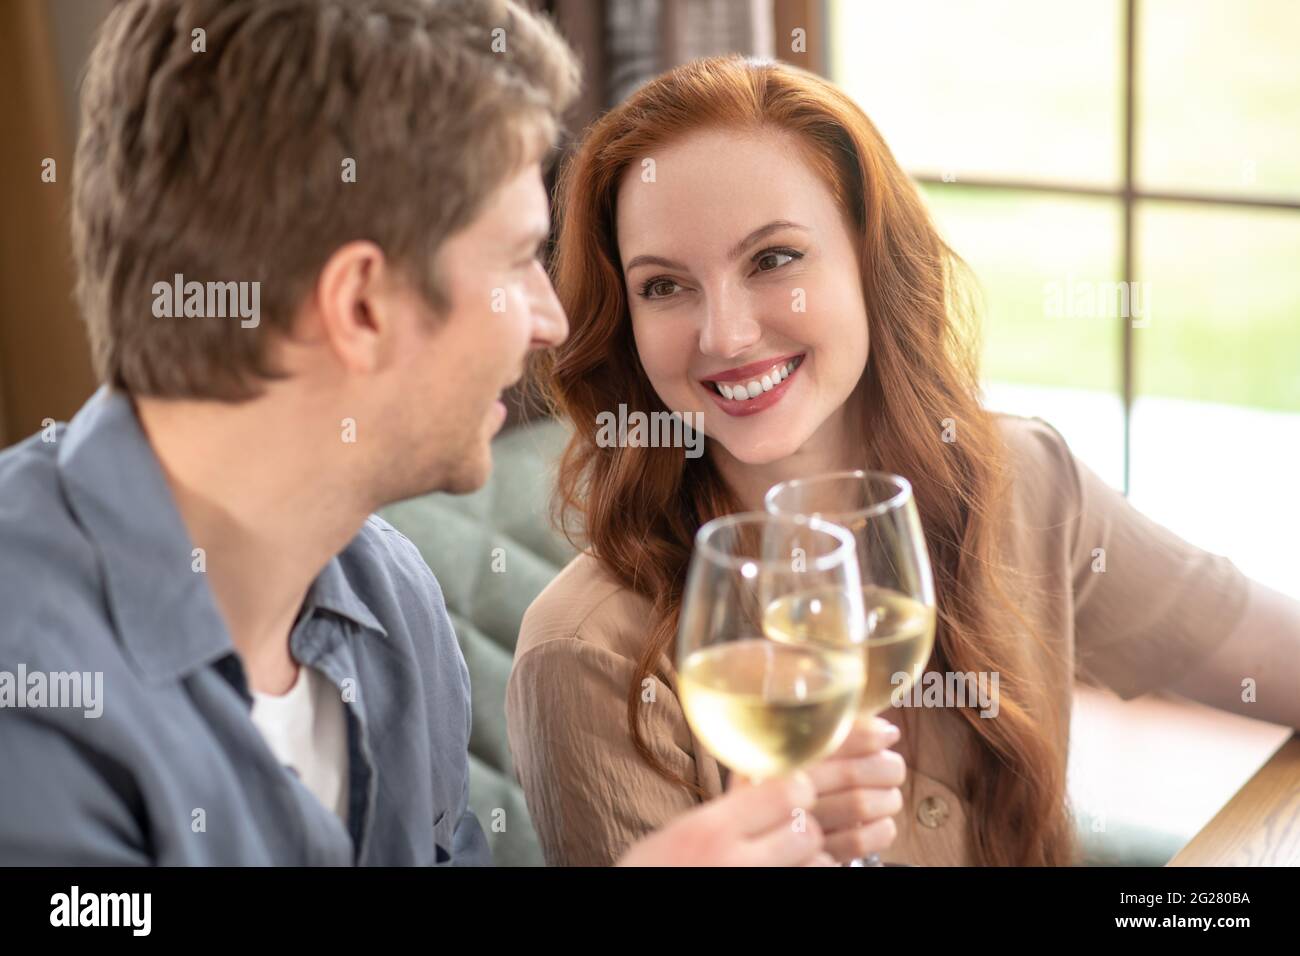 Belle femme et homme attentif avec des verres de vin Banque D'Images